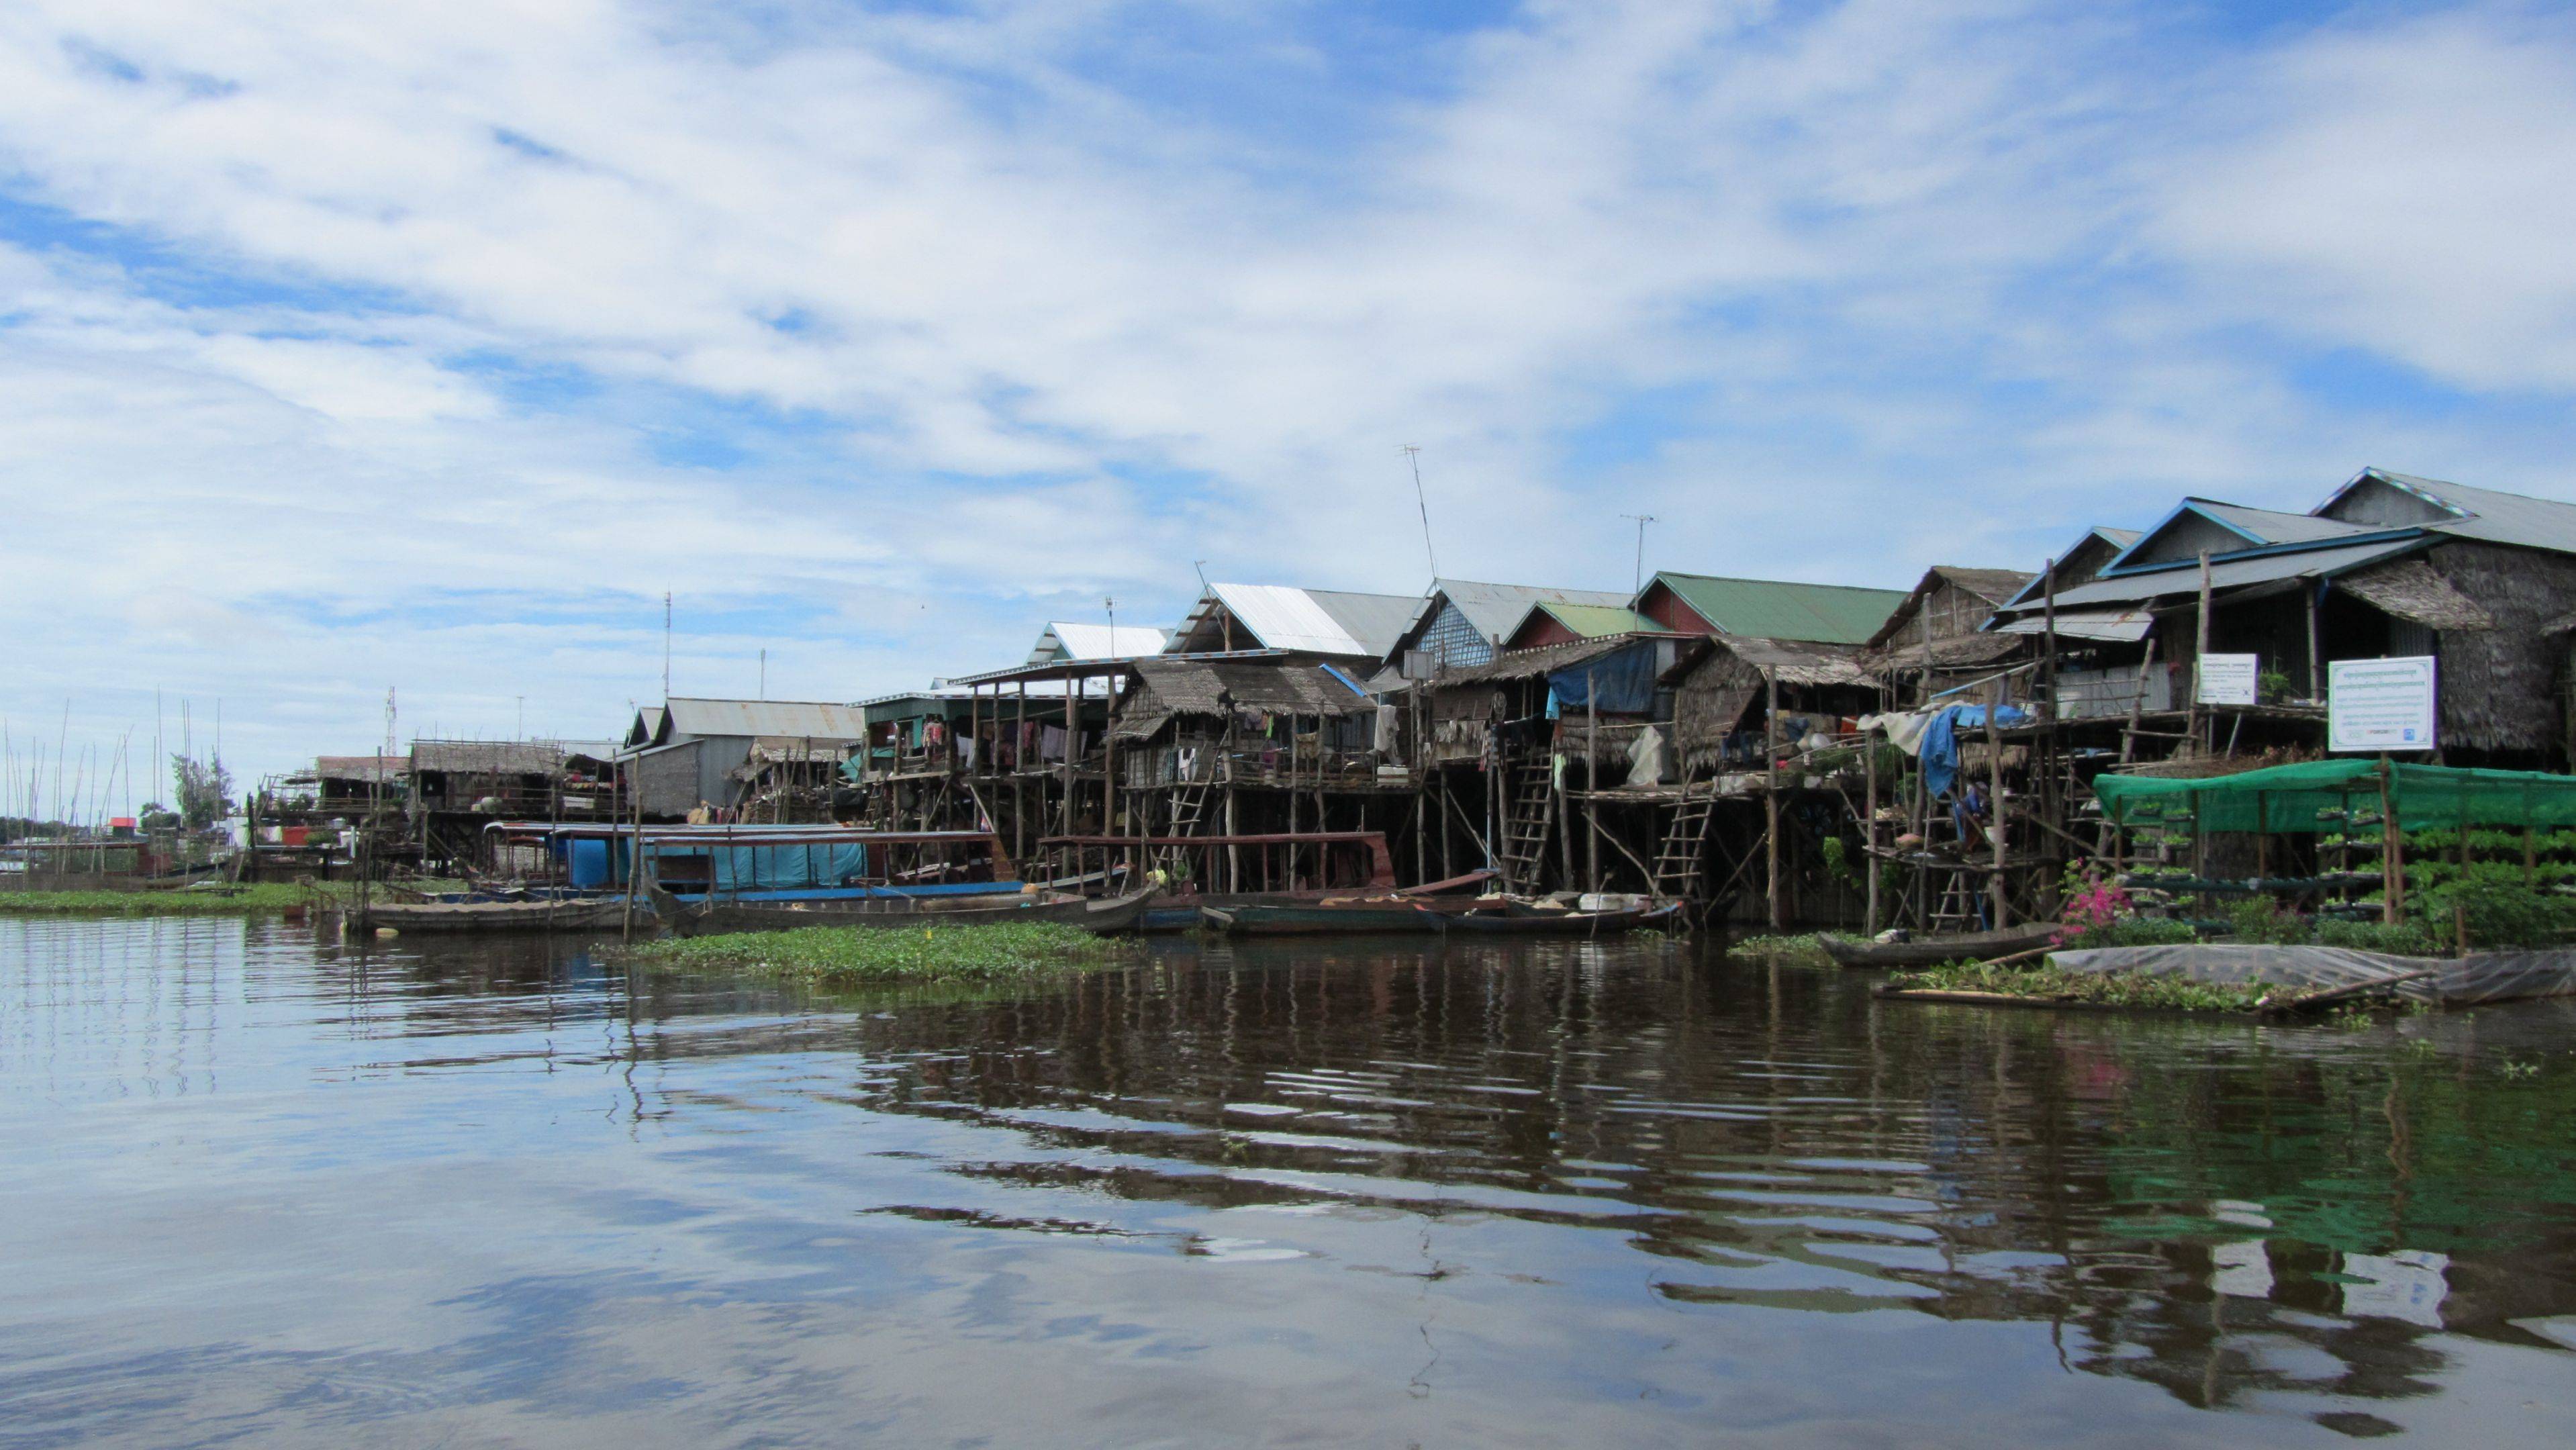 Villaggio galleggiante e arrivo a Luang Prabang in Laos